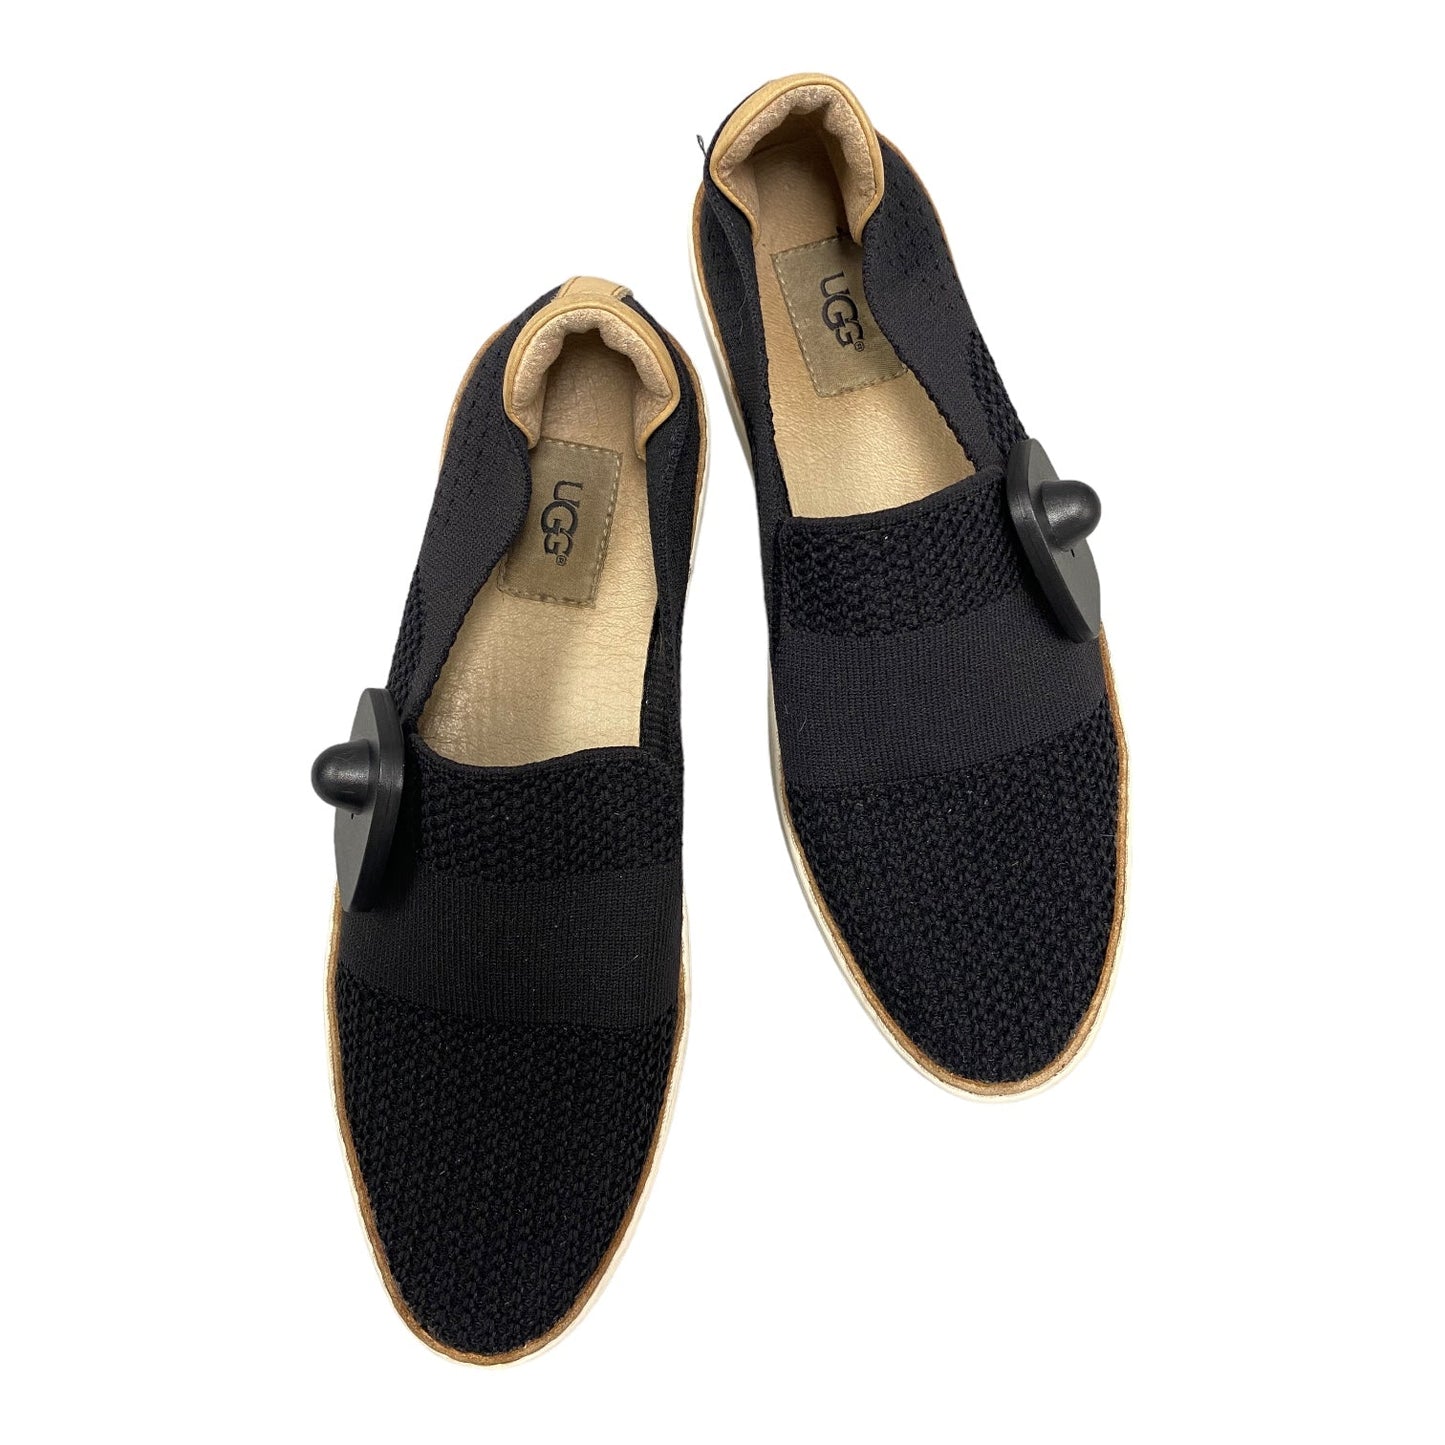 Black & Tan Shoes Designer Ugg, Size 9